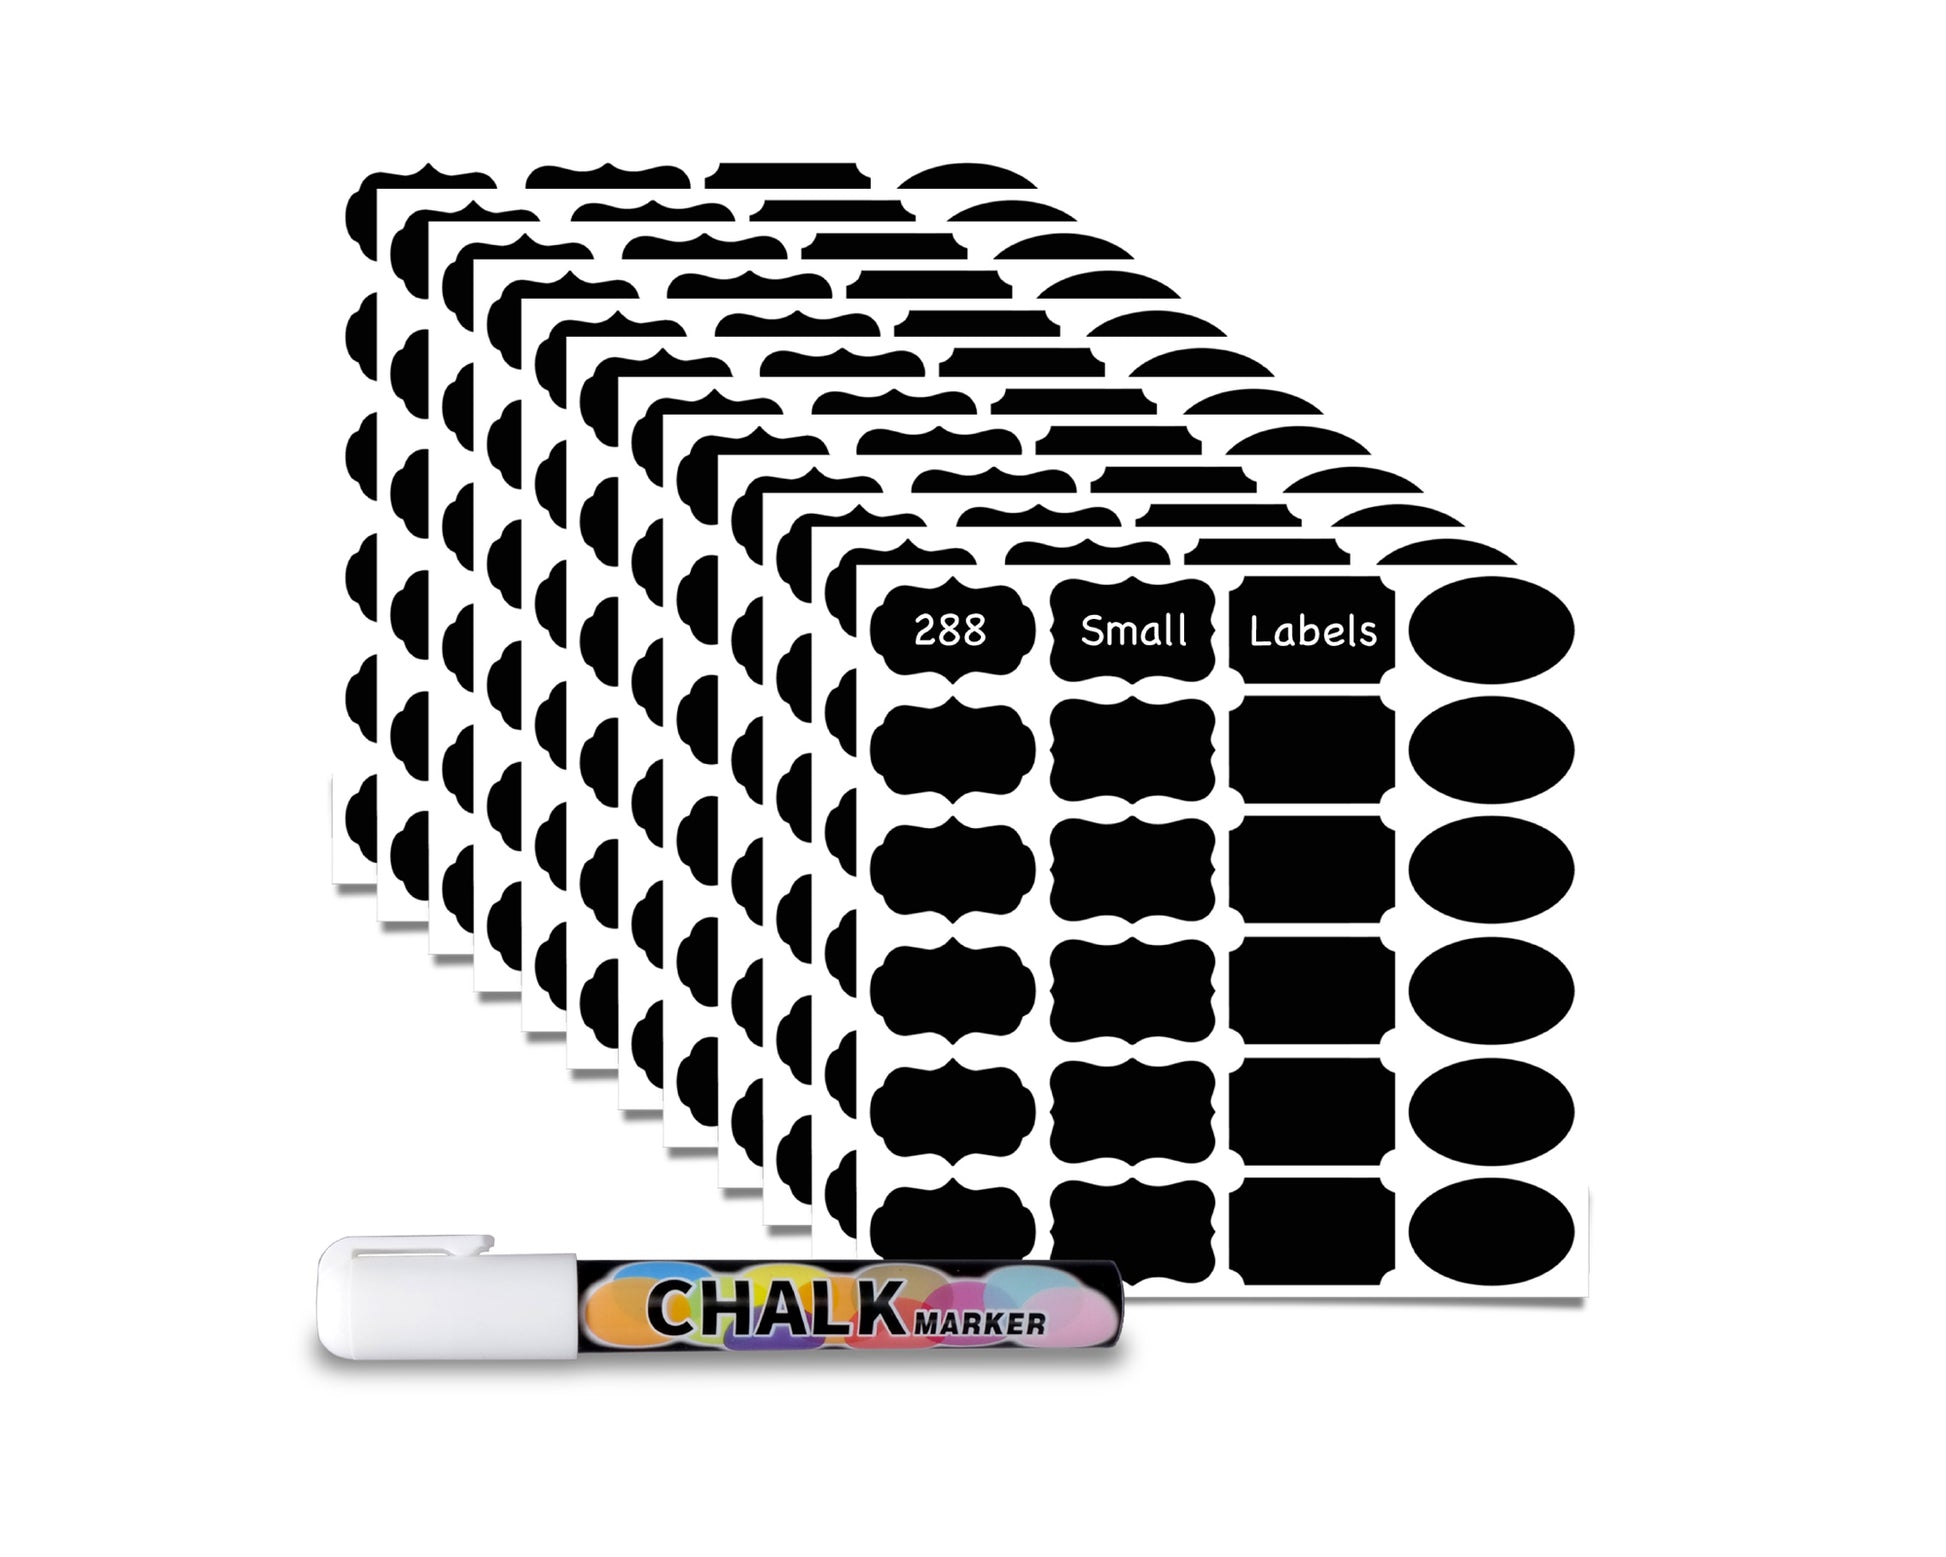 Chalkboard Labels with Erasable Chalk Marker Pen - Reusable Removable  Waterproof Dishwasher Safe